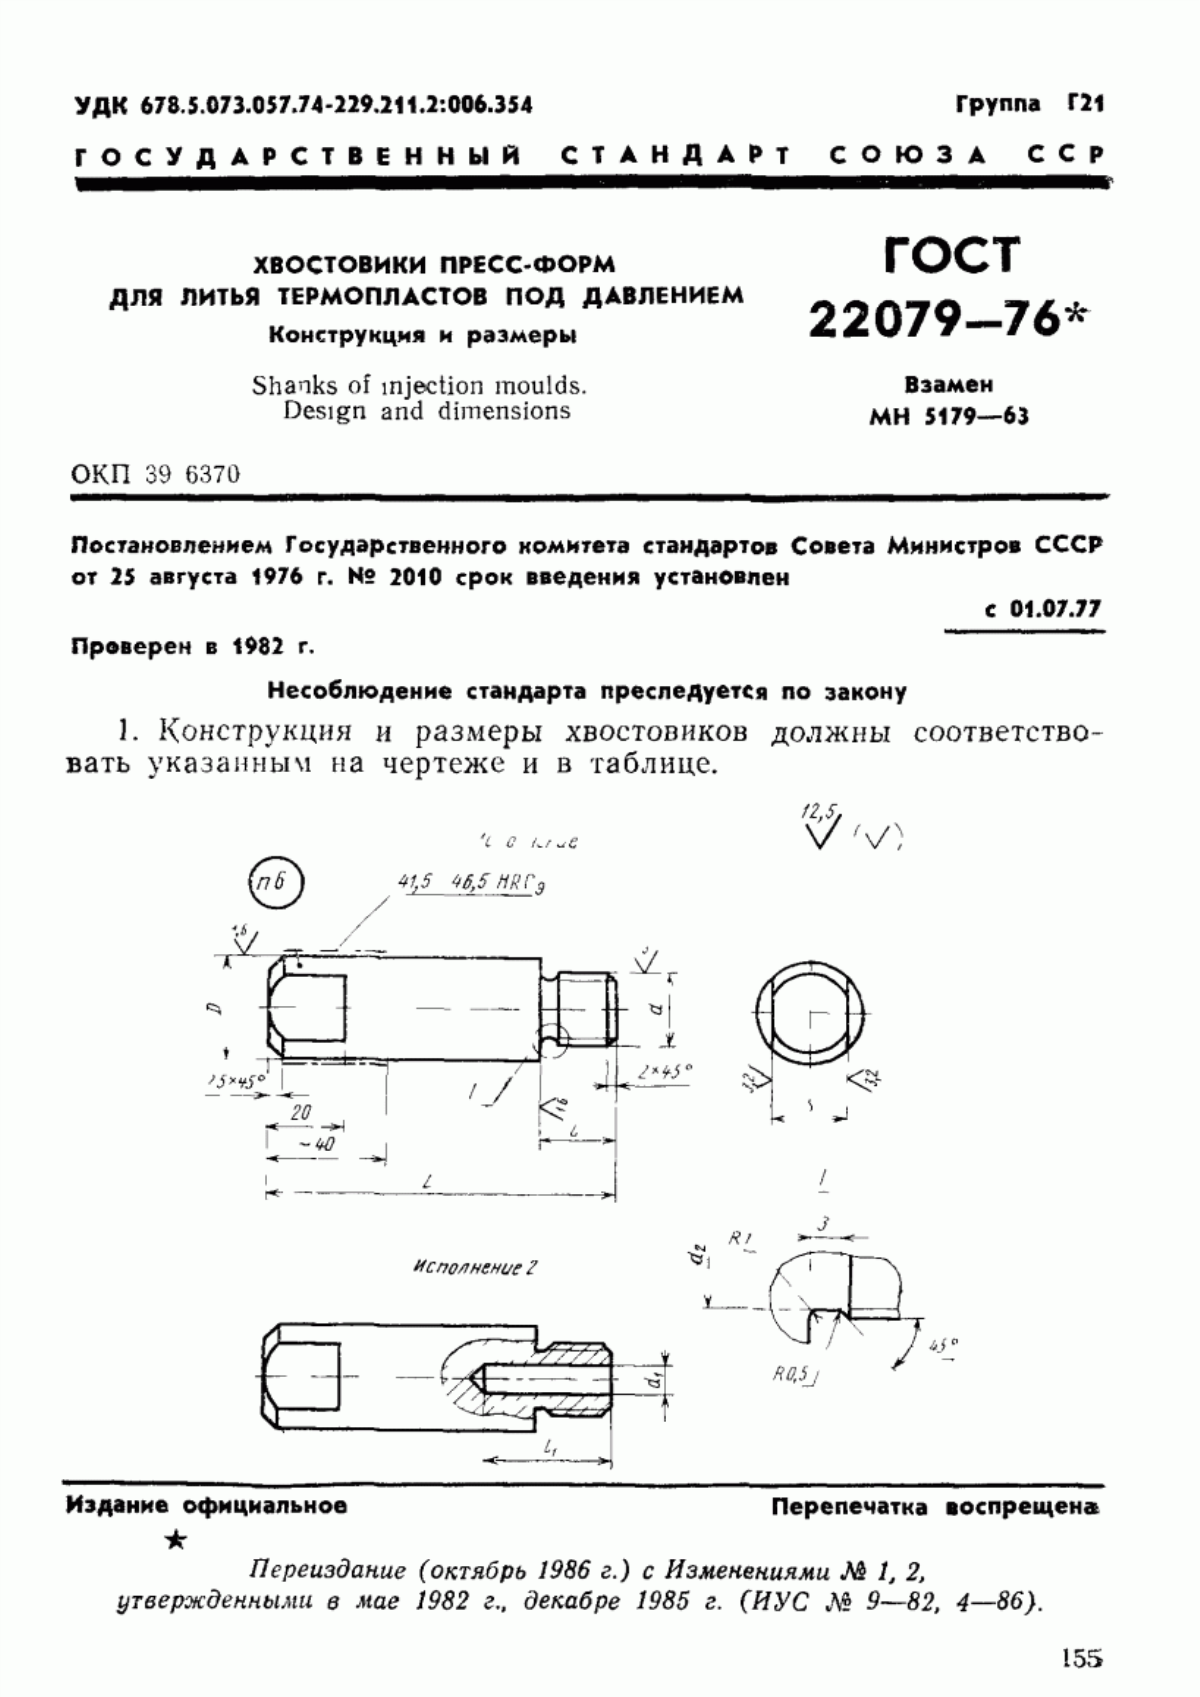 ГОСТ 22079-76 Хвостовики пресс-форм для литья термопластов под давлением. Конструкция и размеры